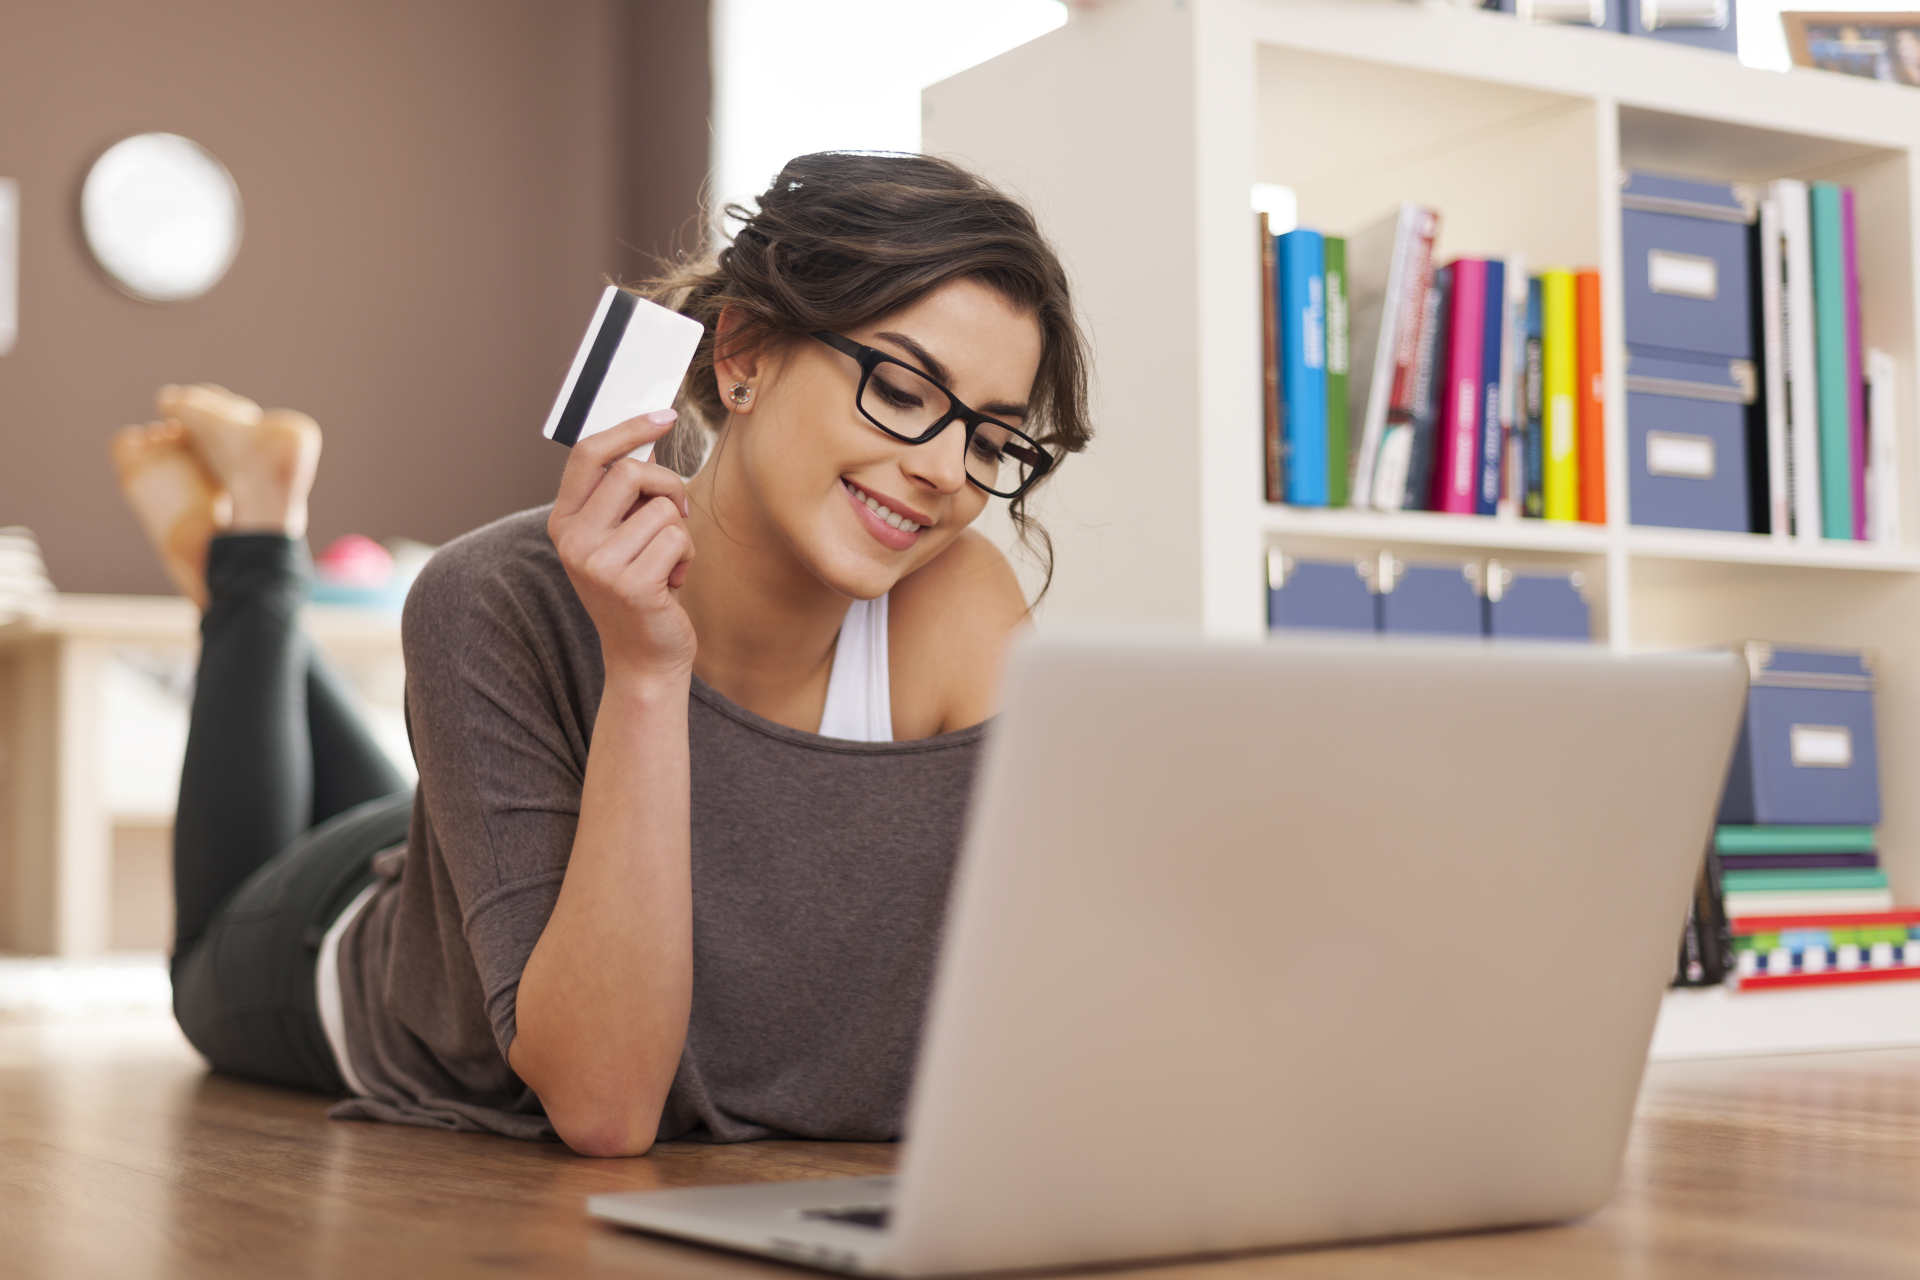 Frau liegt am Boden am Online shoppen mit Kreditkarte in der Hand